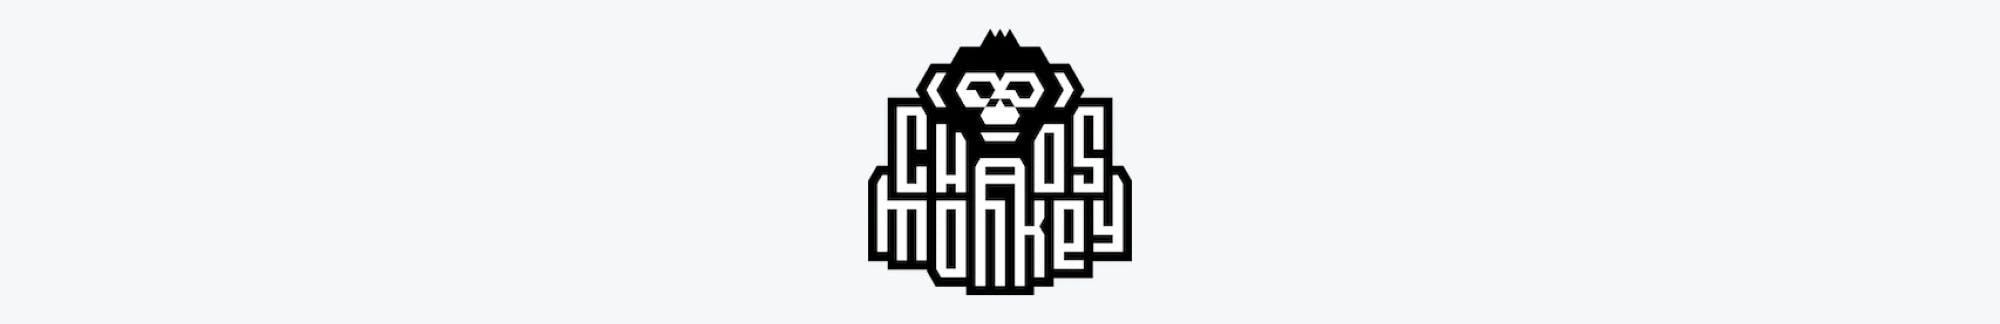 Chaos Monkey logo